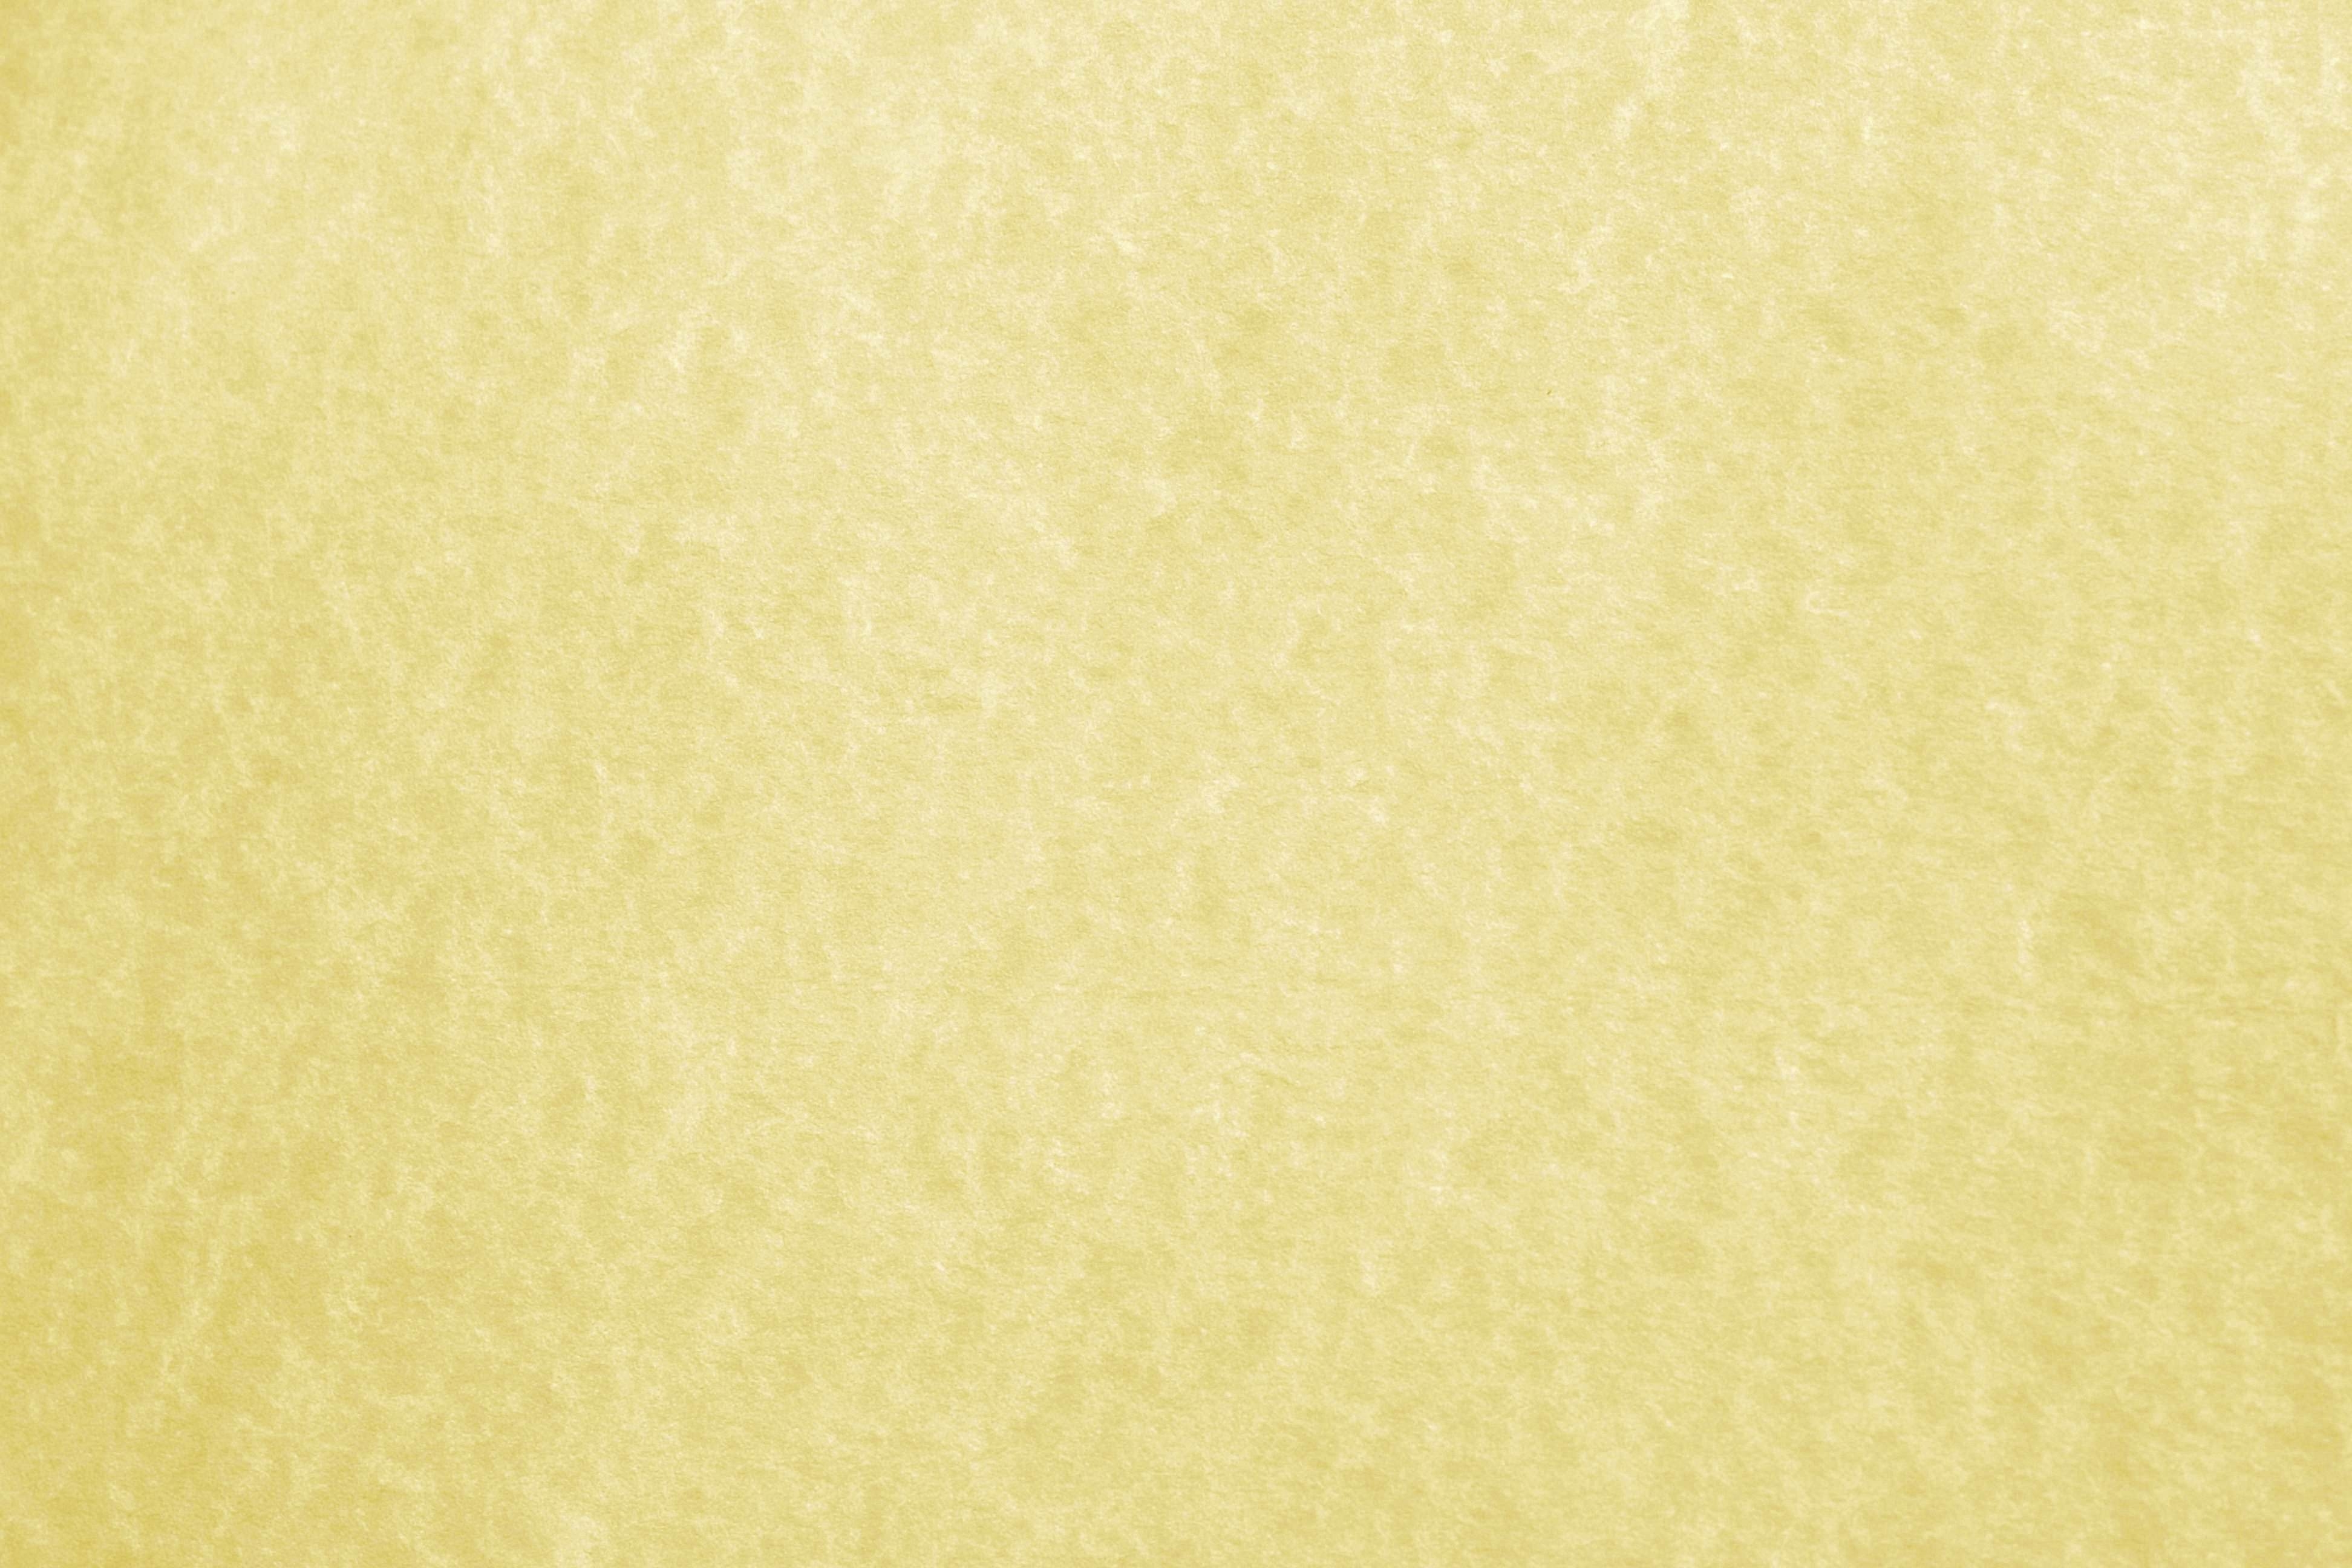 parchment wallpaper,yellow,beige,textile,wallpaper,paper